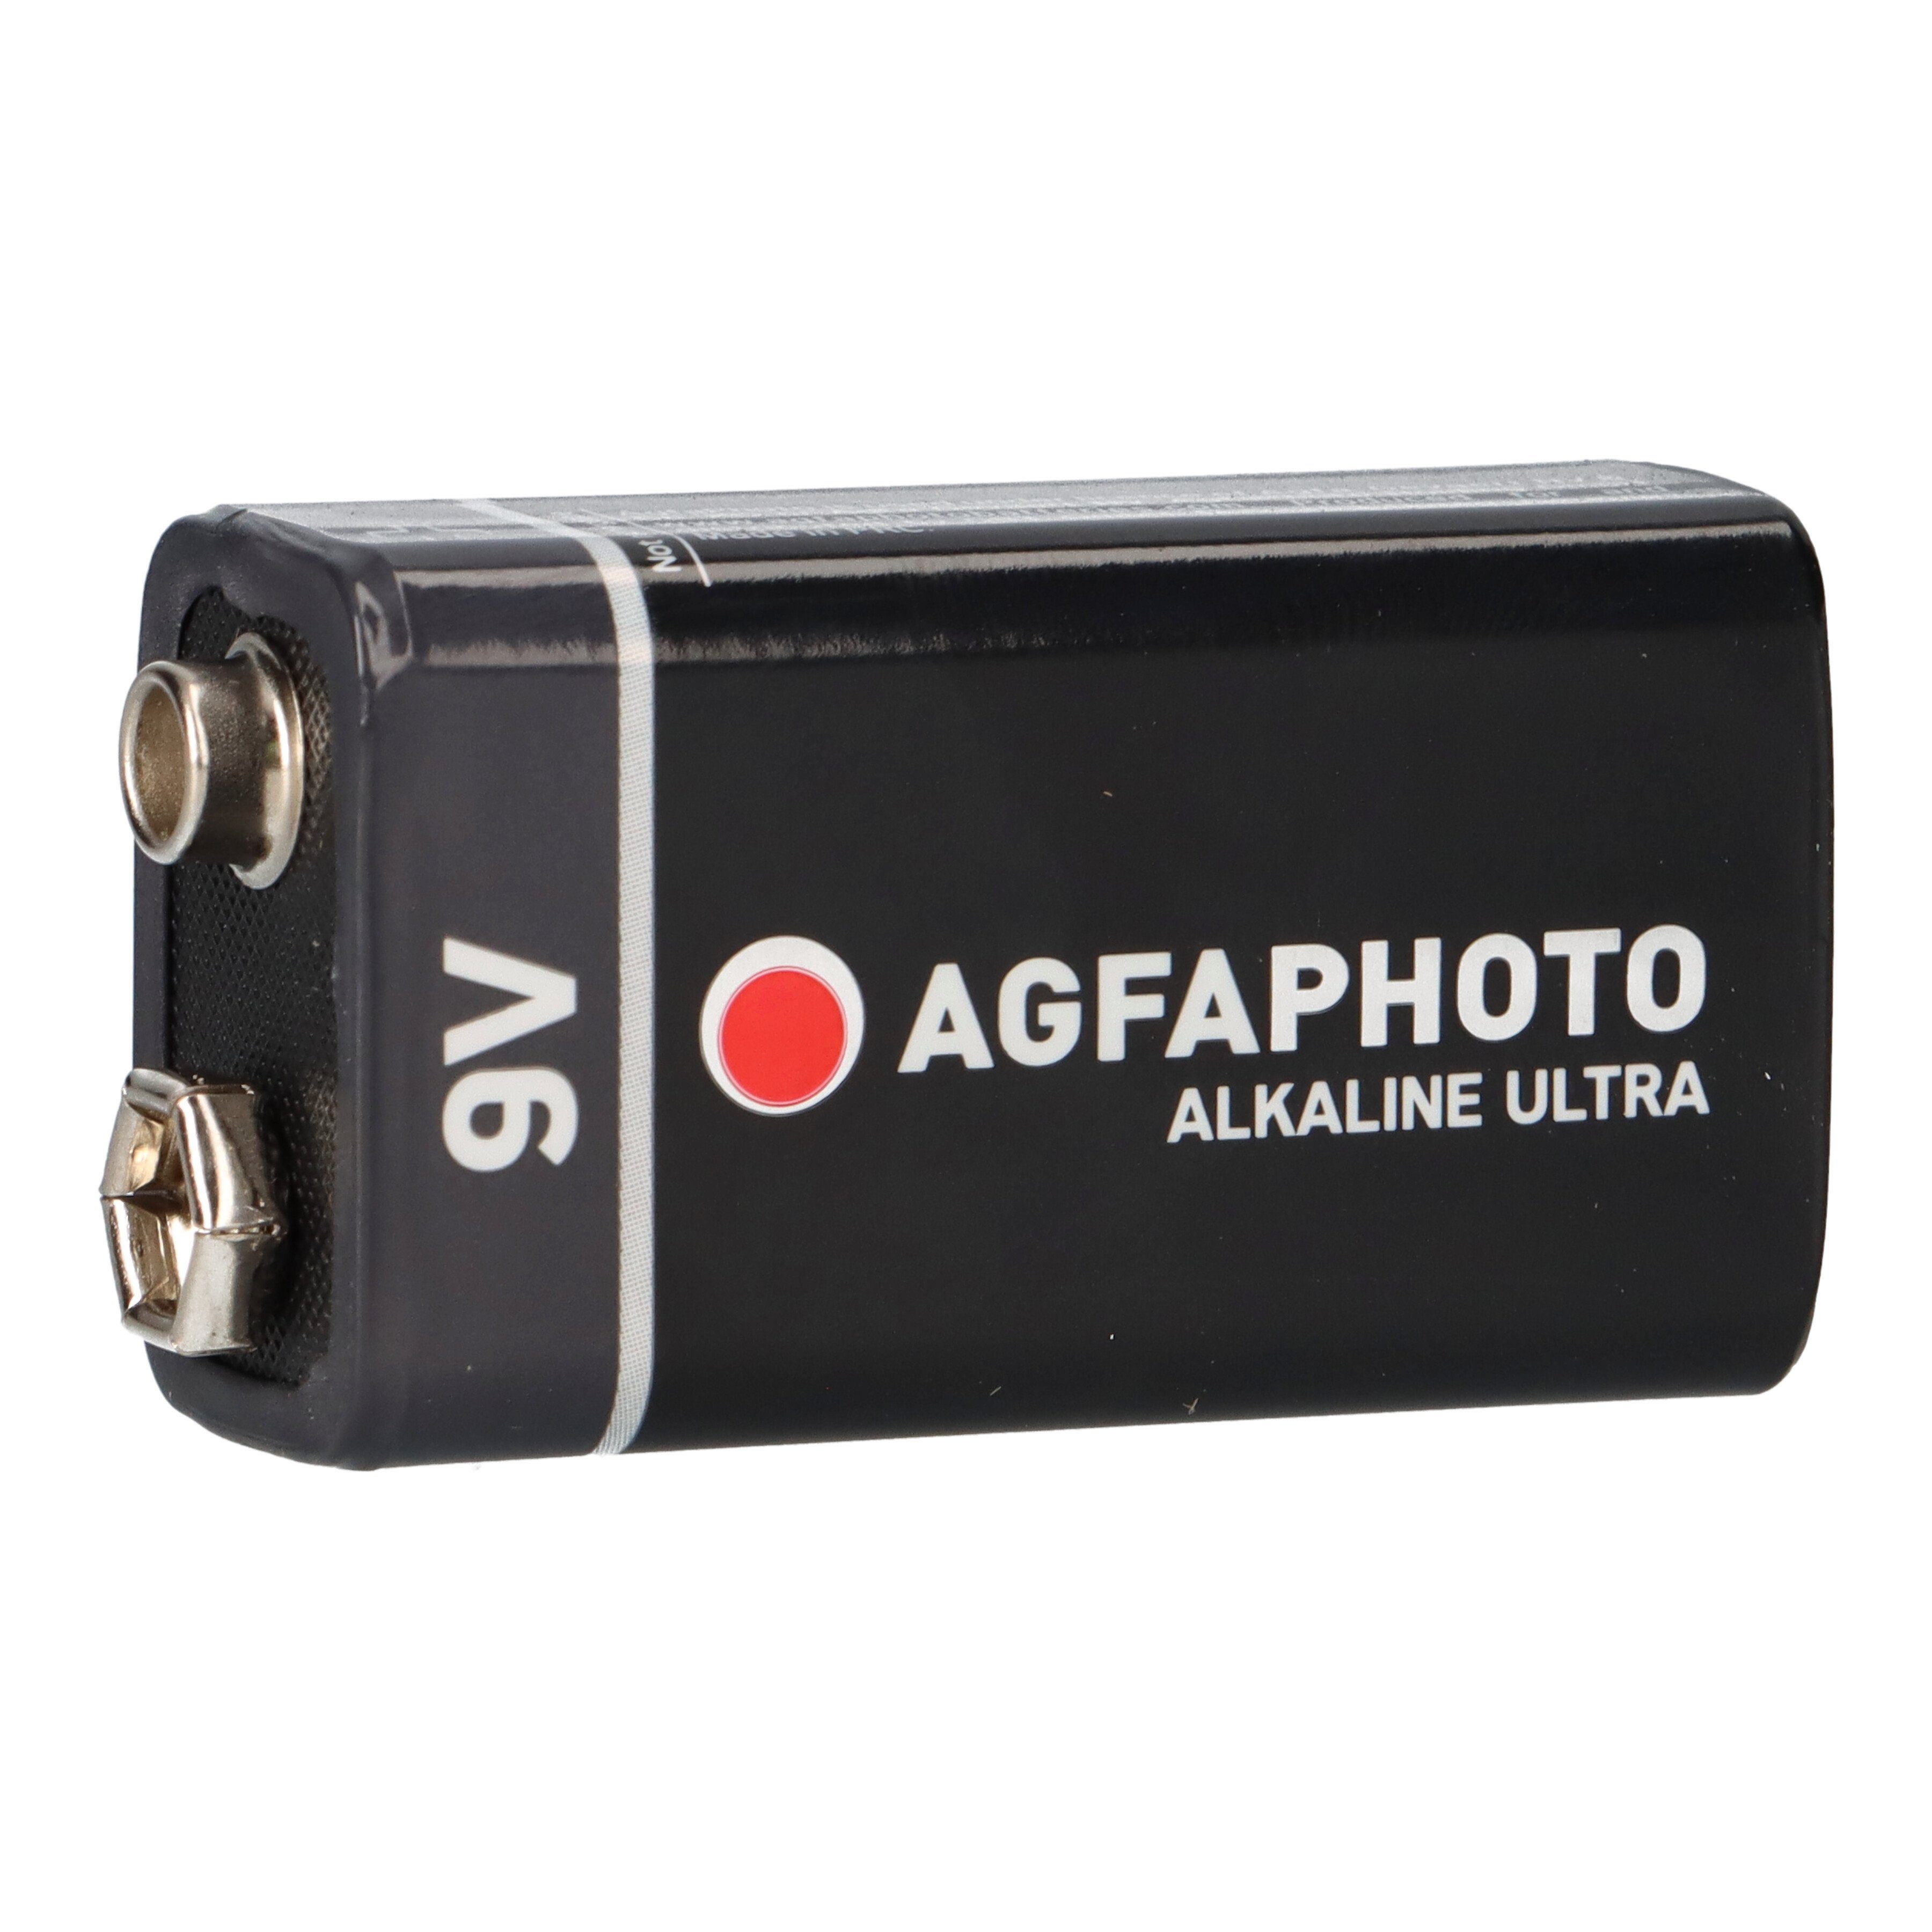 Batterie Batterie Alkaline E-Block Blister 1er AgfaPhoto 9V AGFAPHOTO